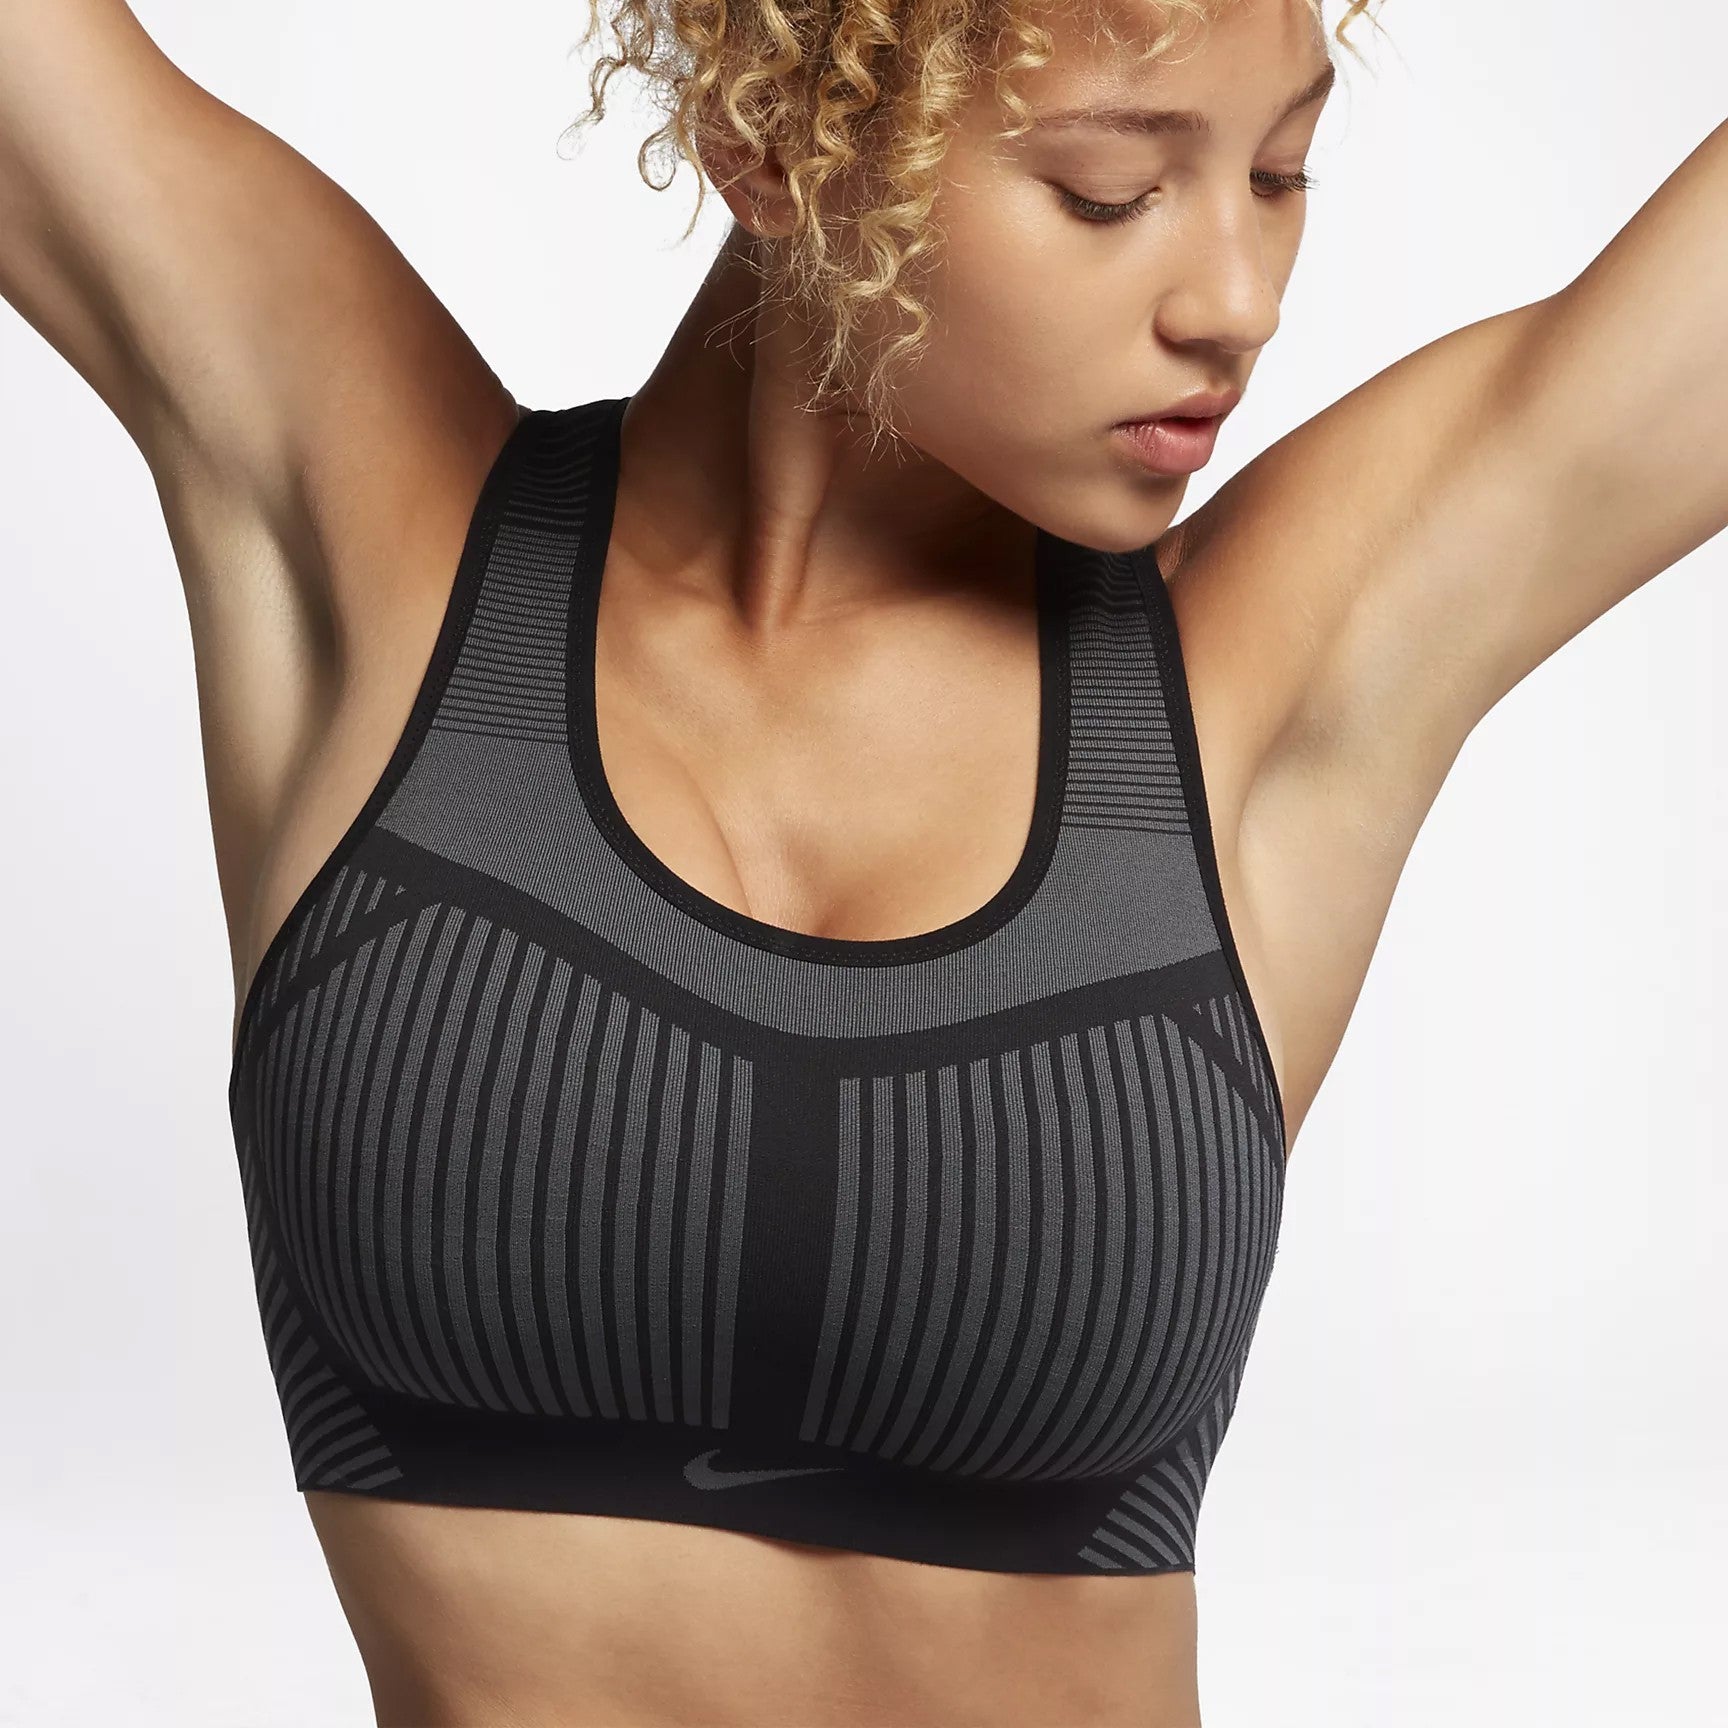 Women's bra Nike Swoosh Flyknit - Sports bras - Women's wear - Handball wear